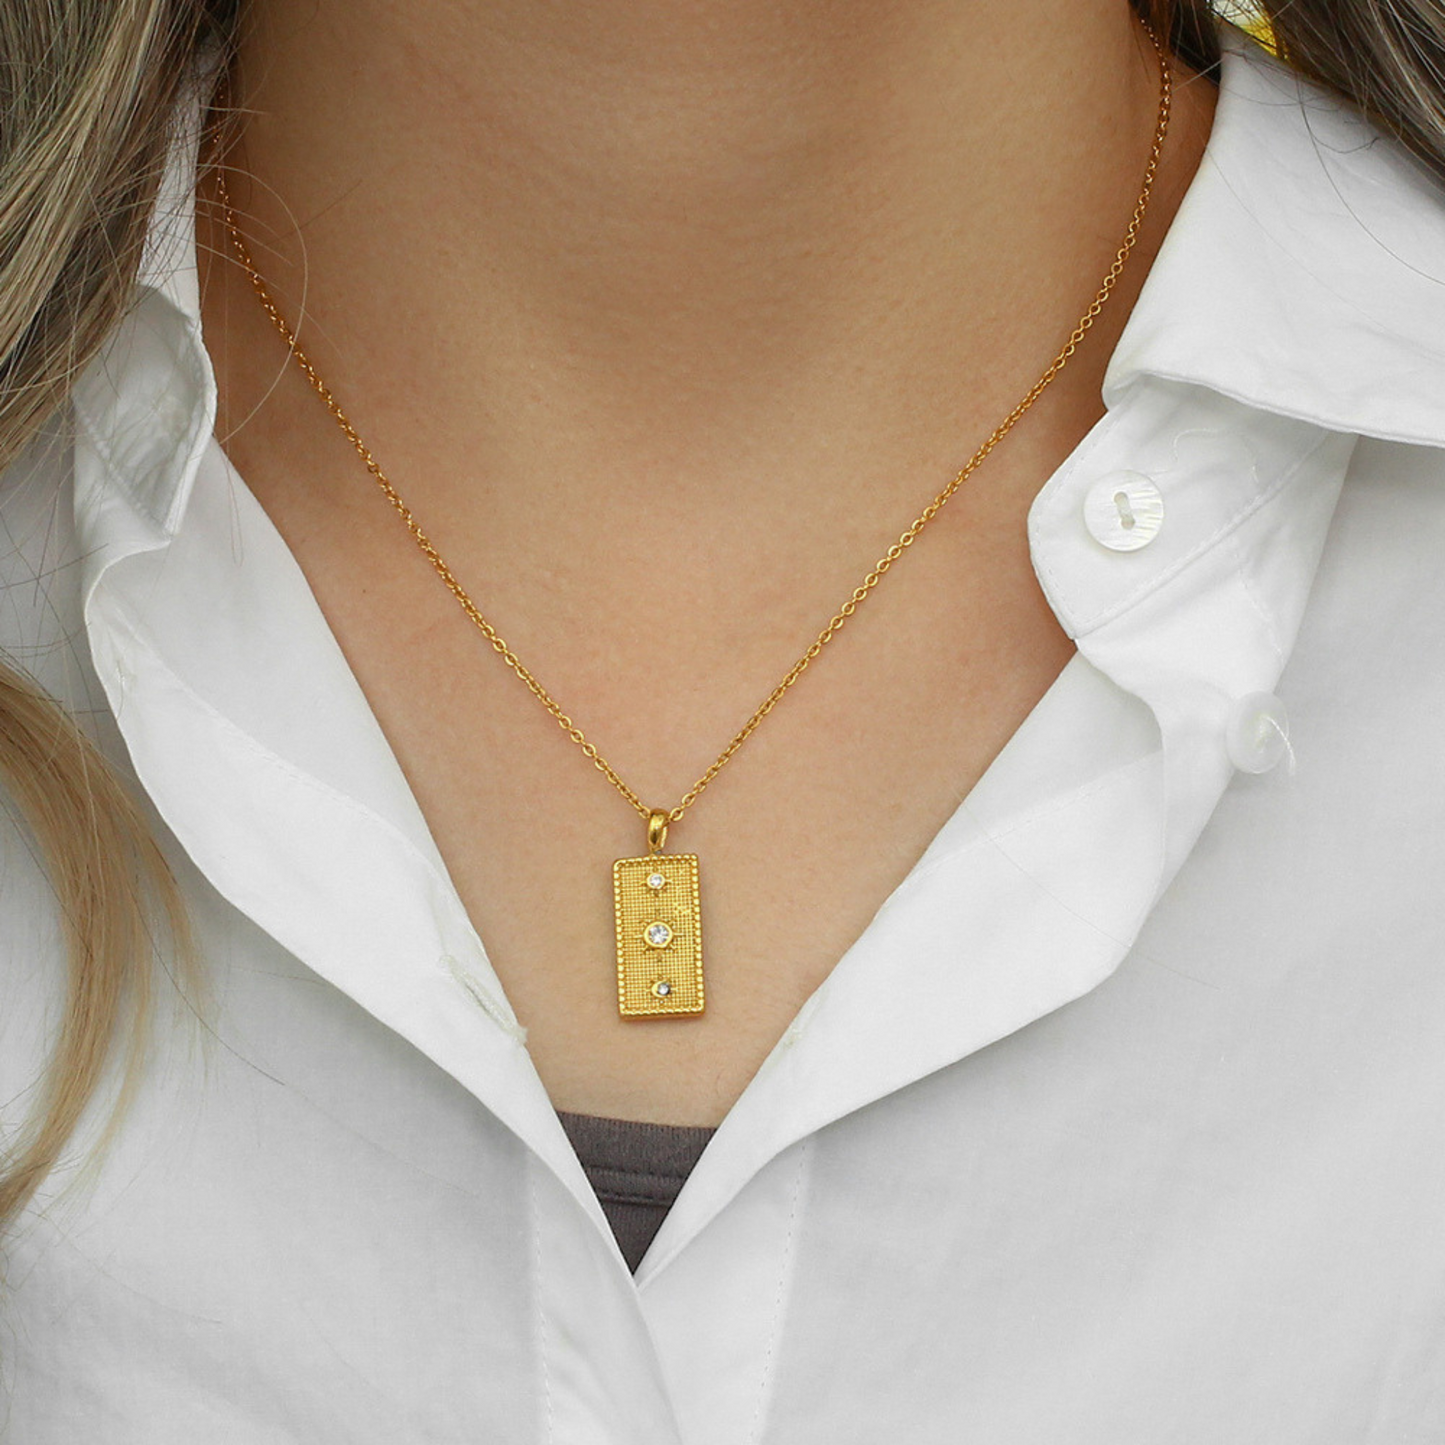 Minimalist Celestial Pendant Necklaces for Women